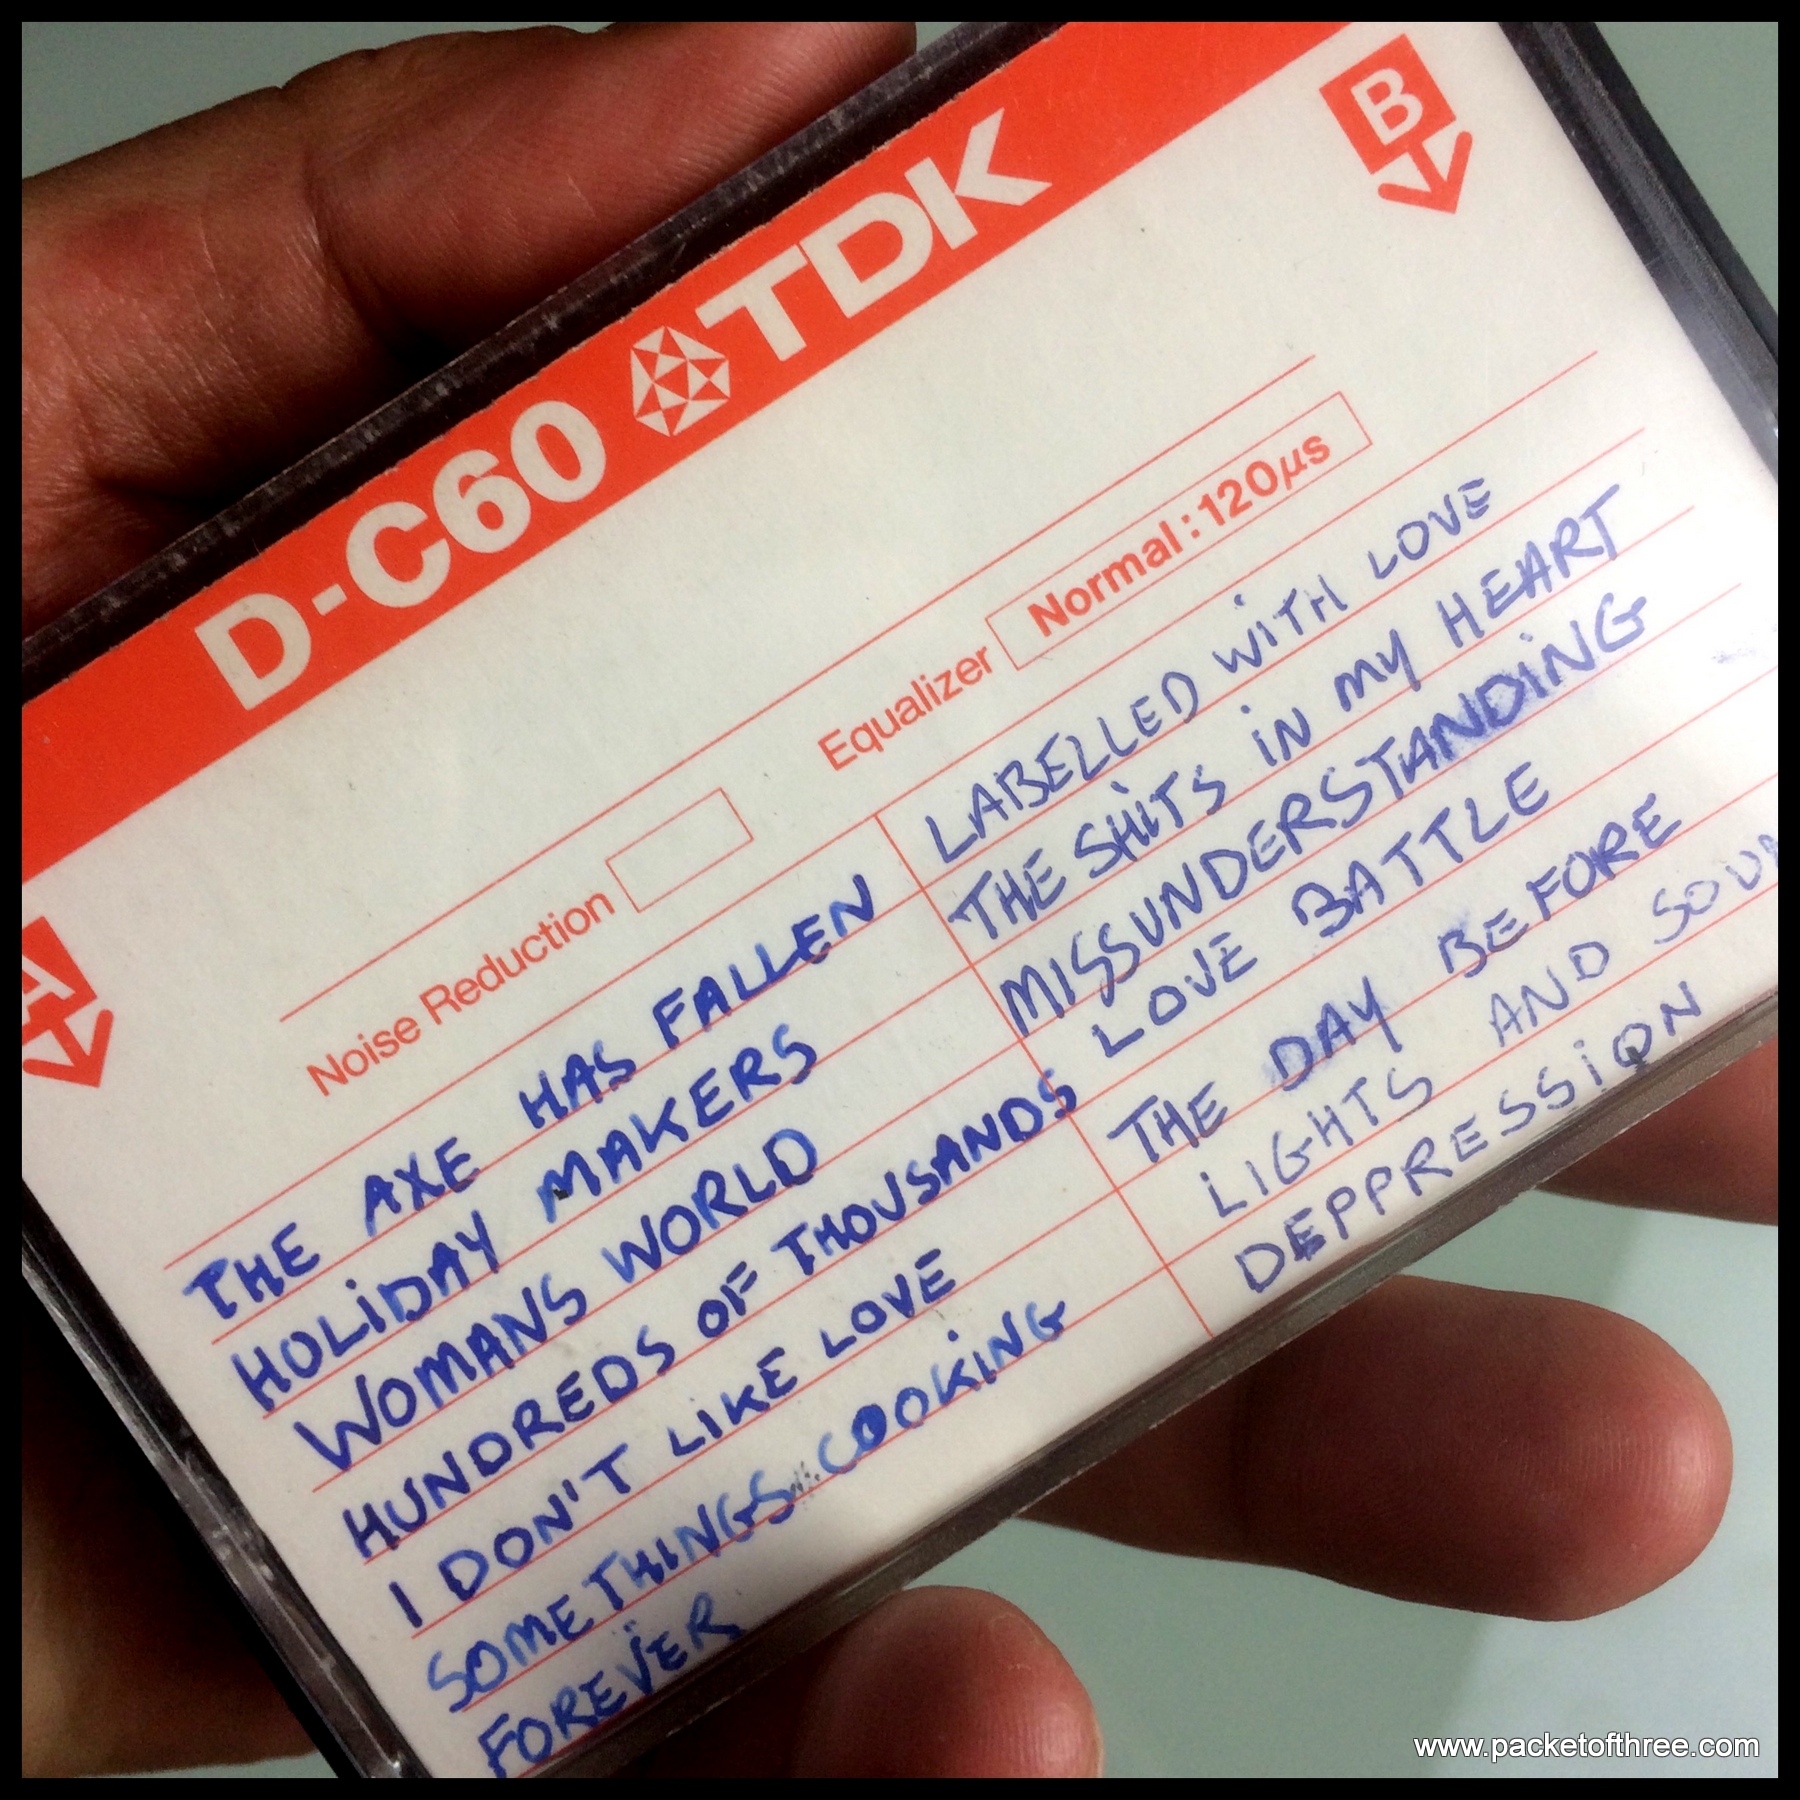 East Side Story Demo cassette